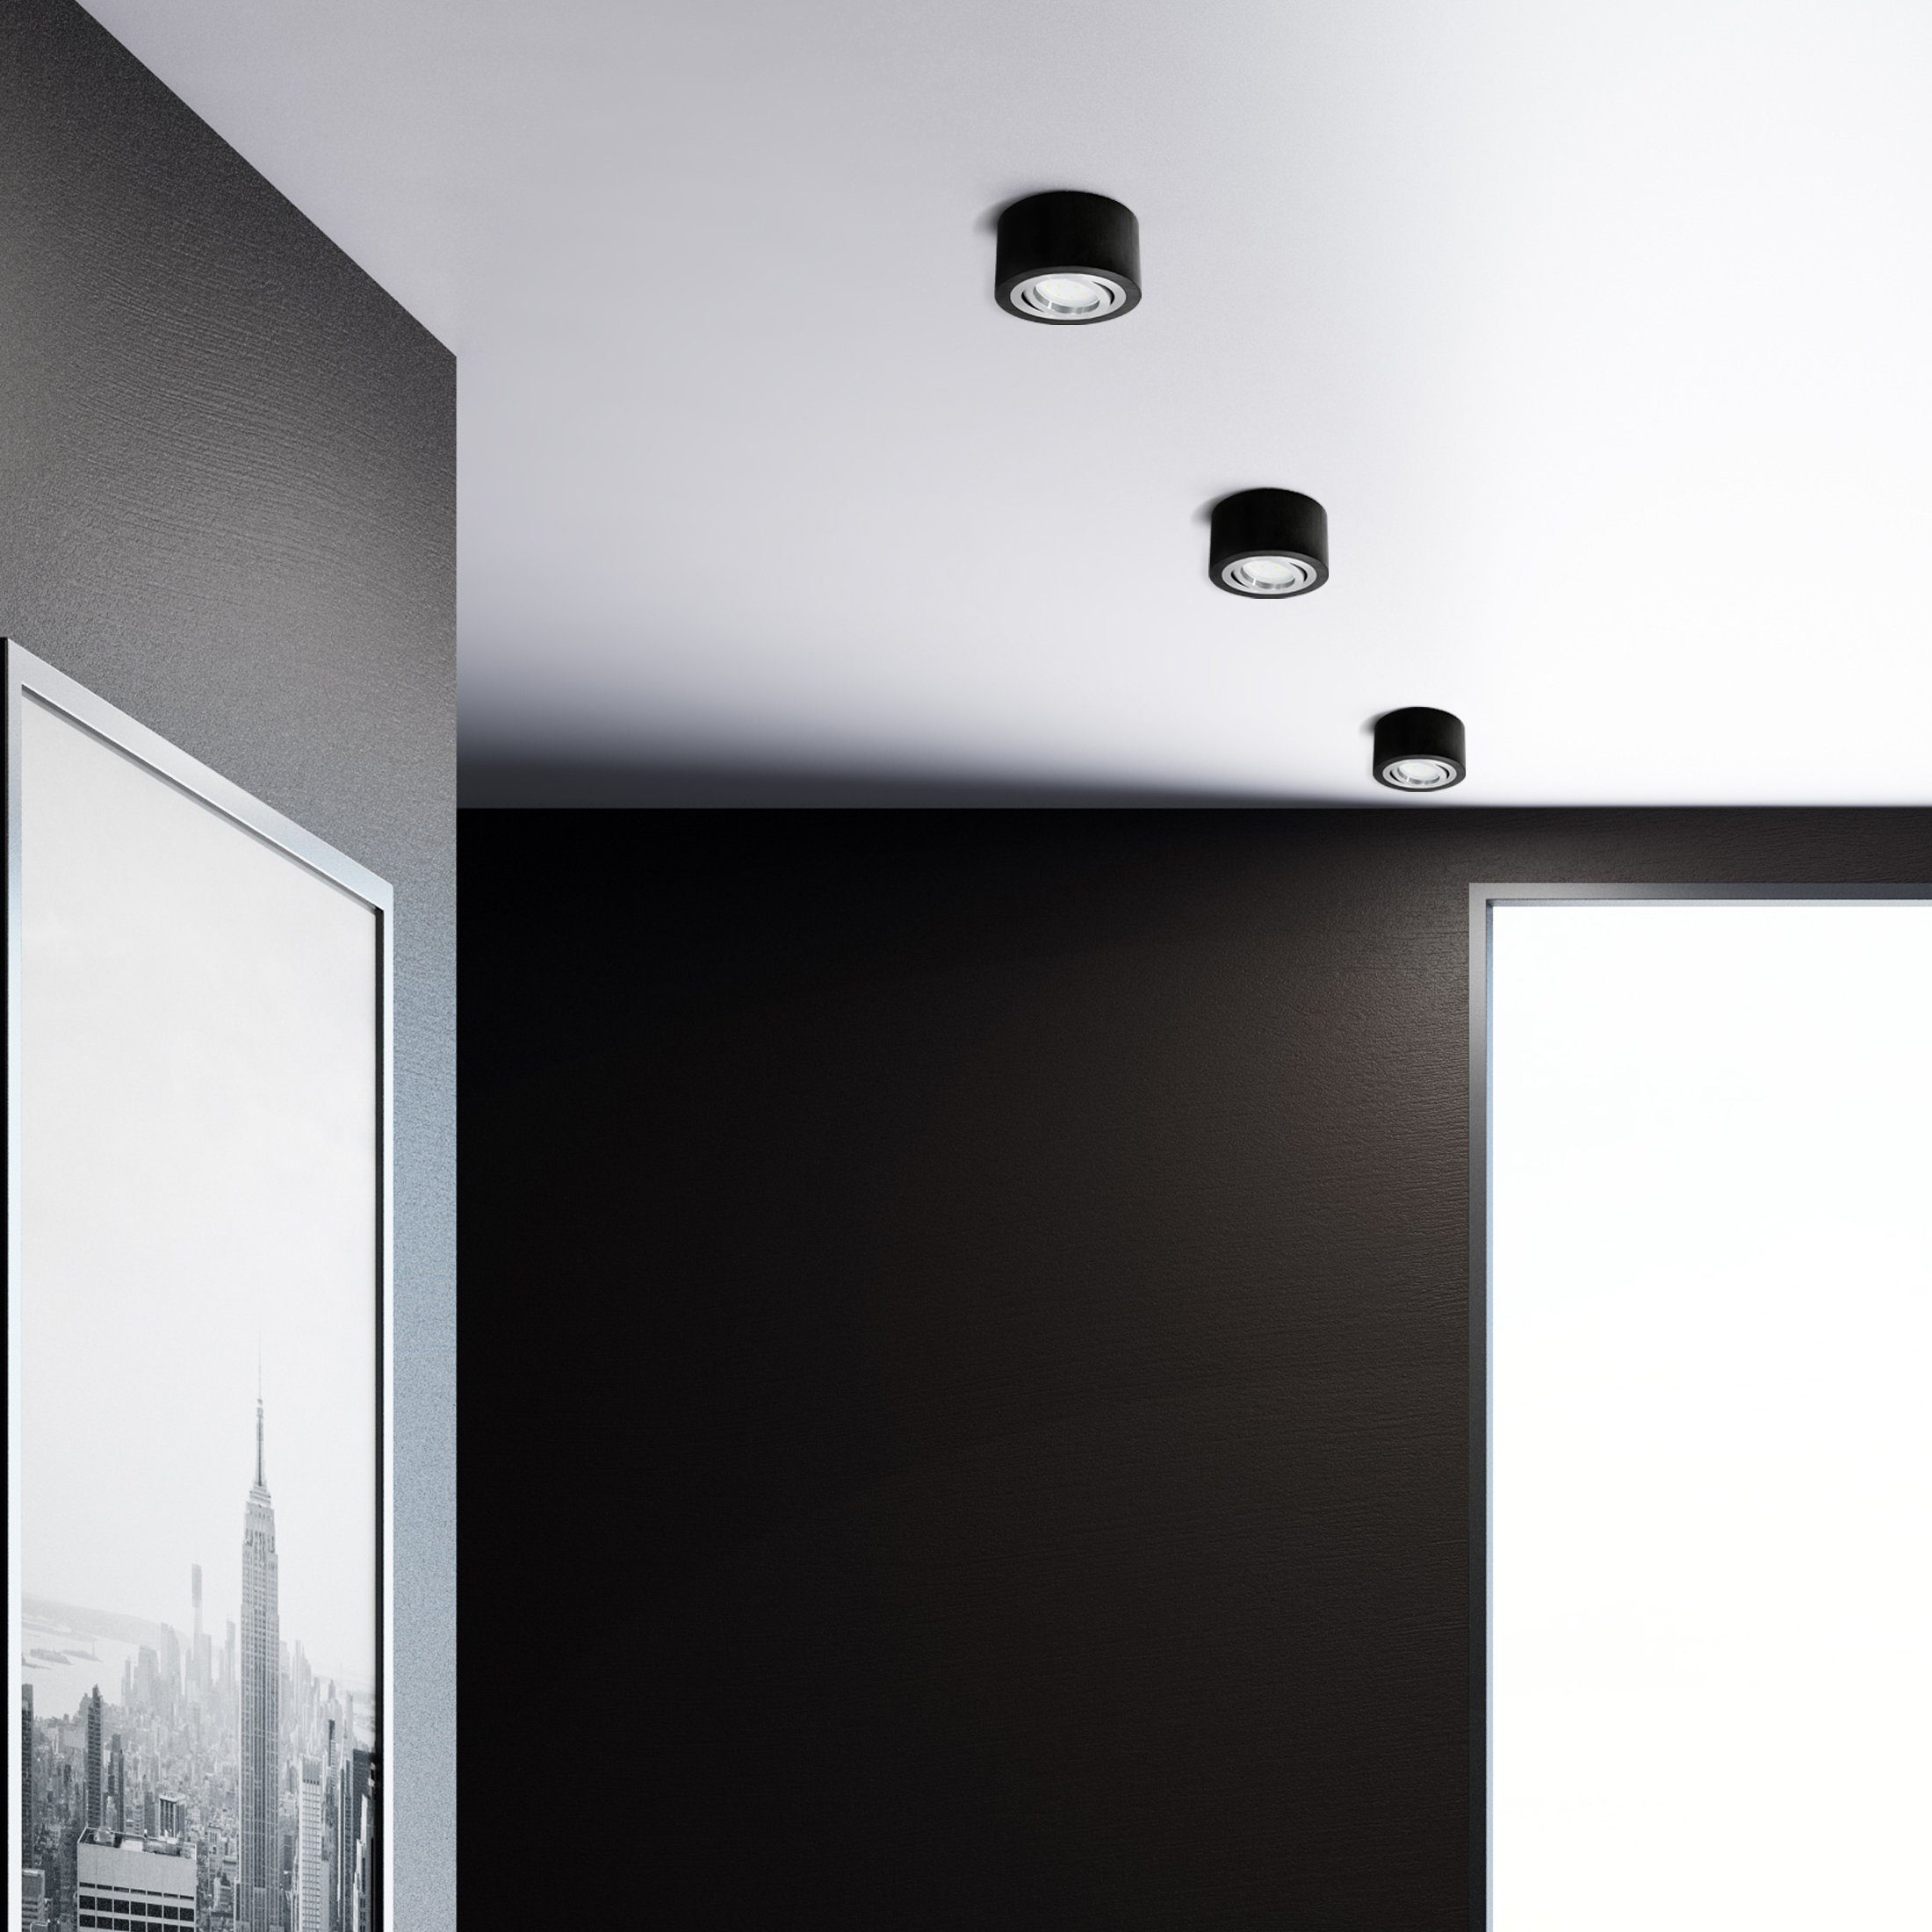 schwenkbar, SSC-LUXon schwarz, Decken-Aufbau-Spot Flacher mit Aufbauleuchte Warmweiß 5W, LED-Modul Alu